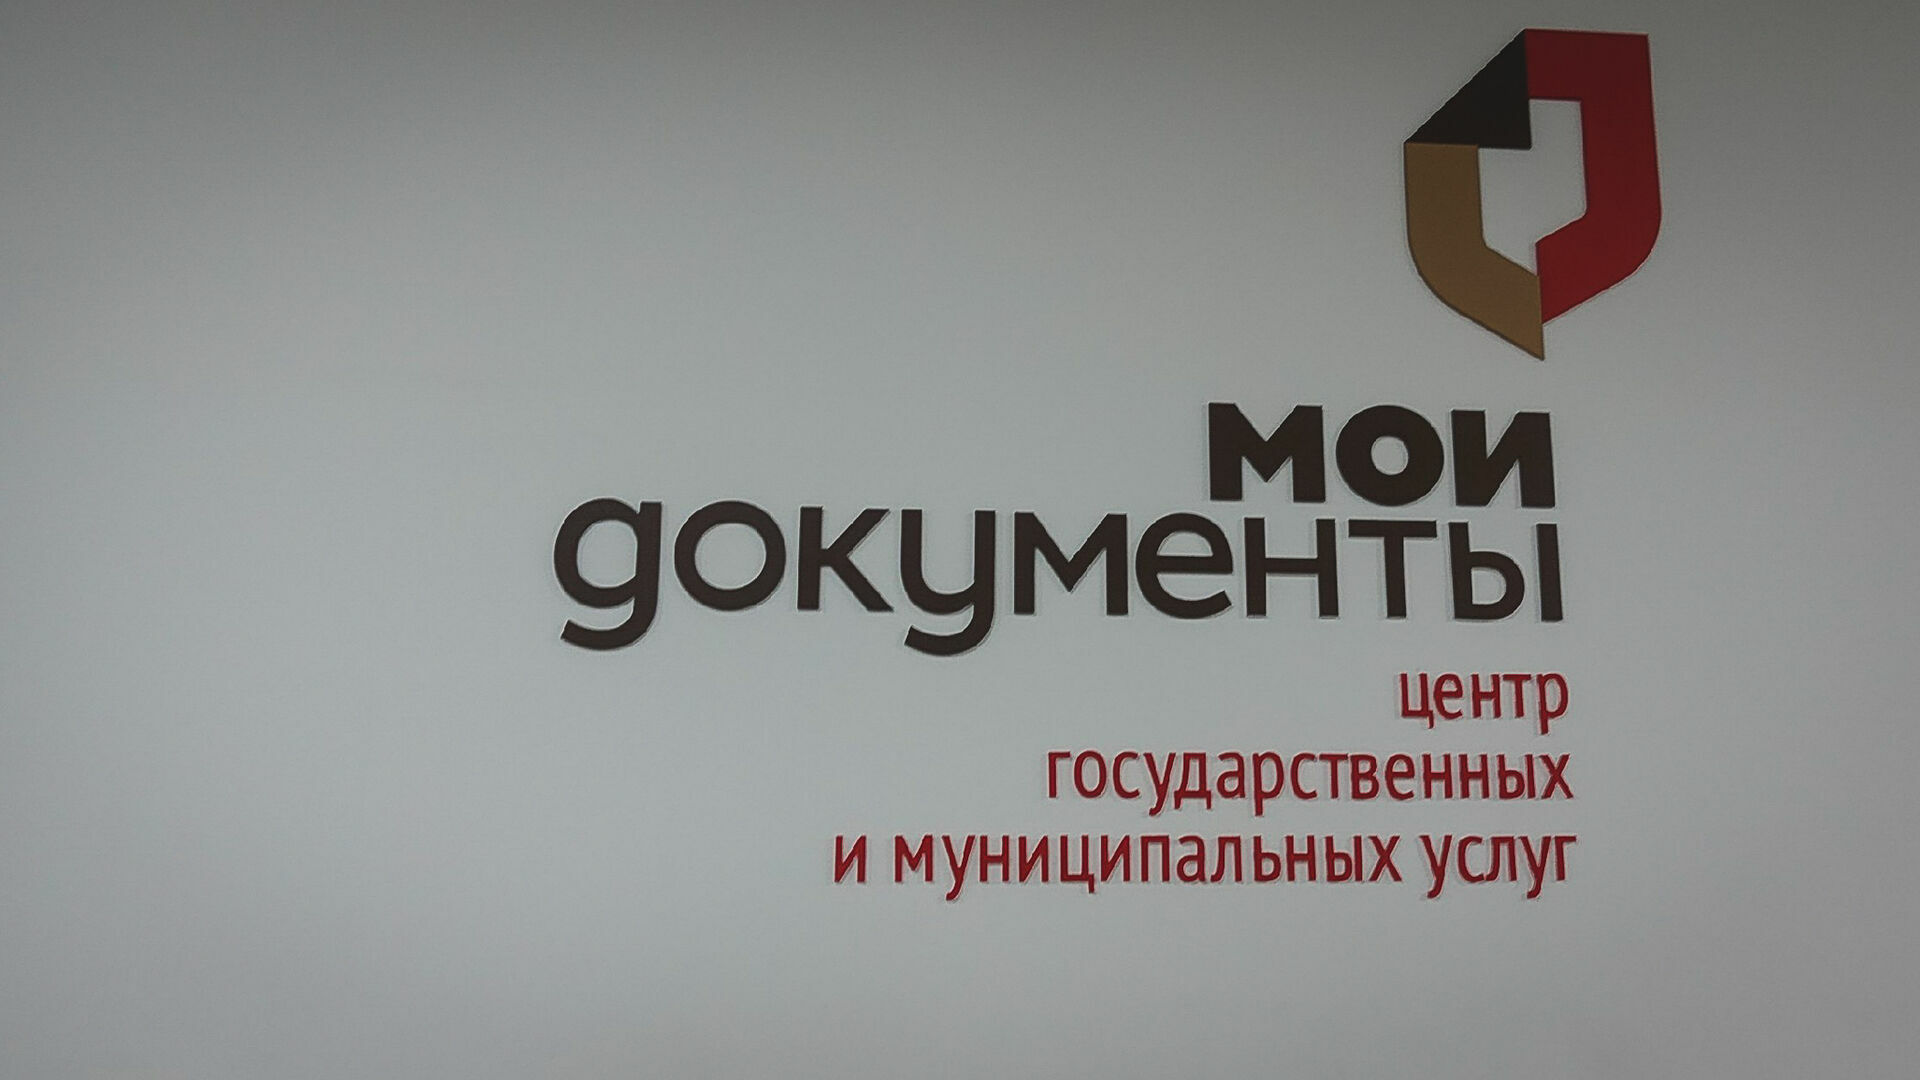 Офис МФЦ за 32,5 млн рублей откроют в Петрозаводске